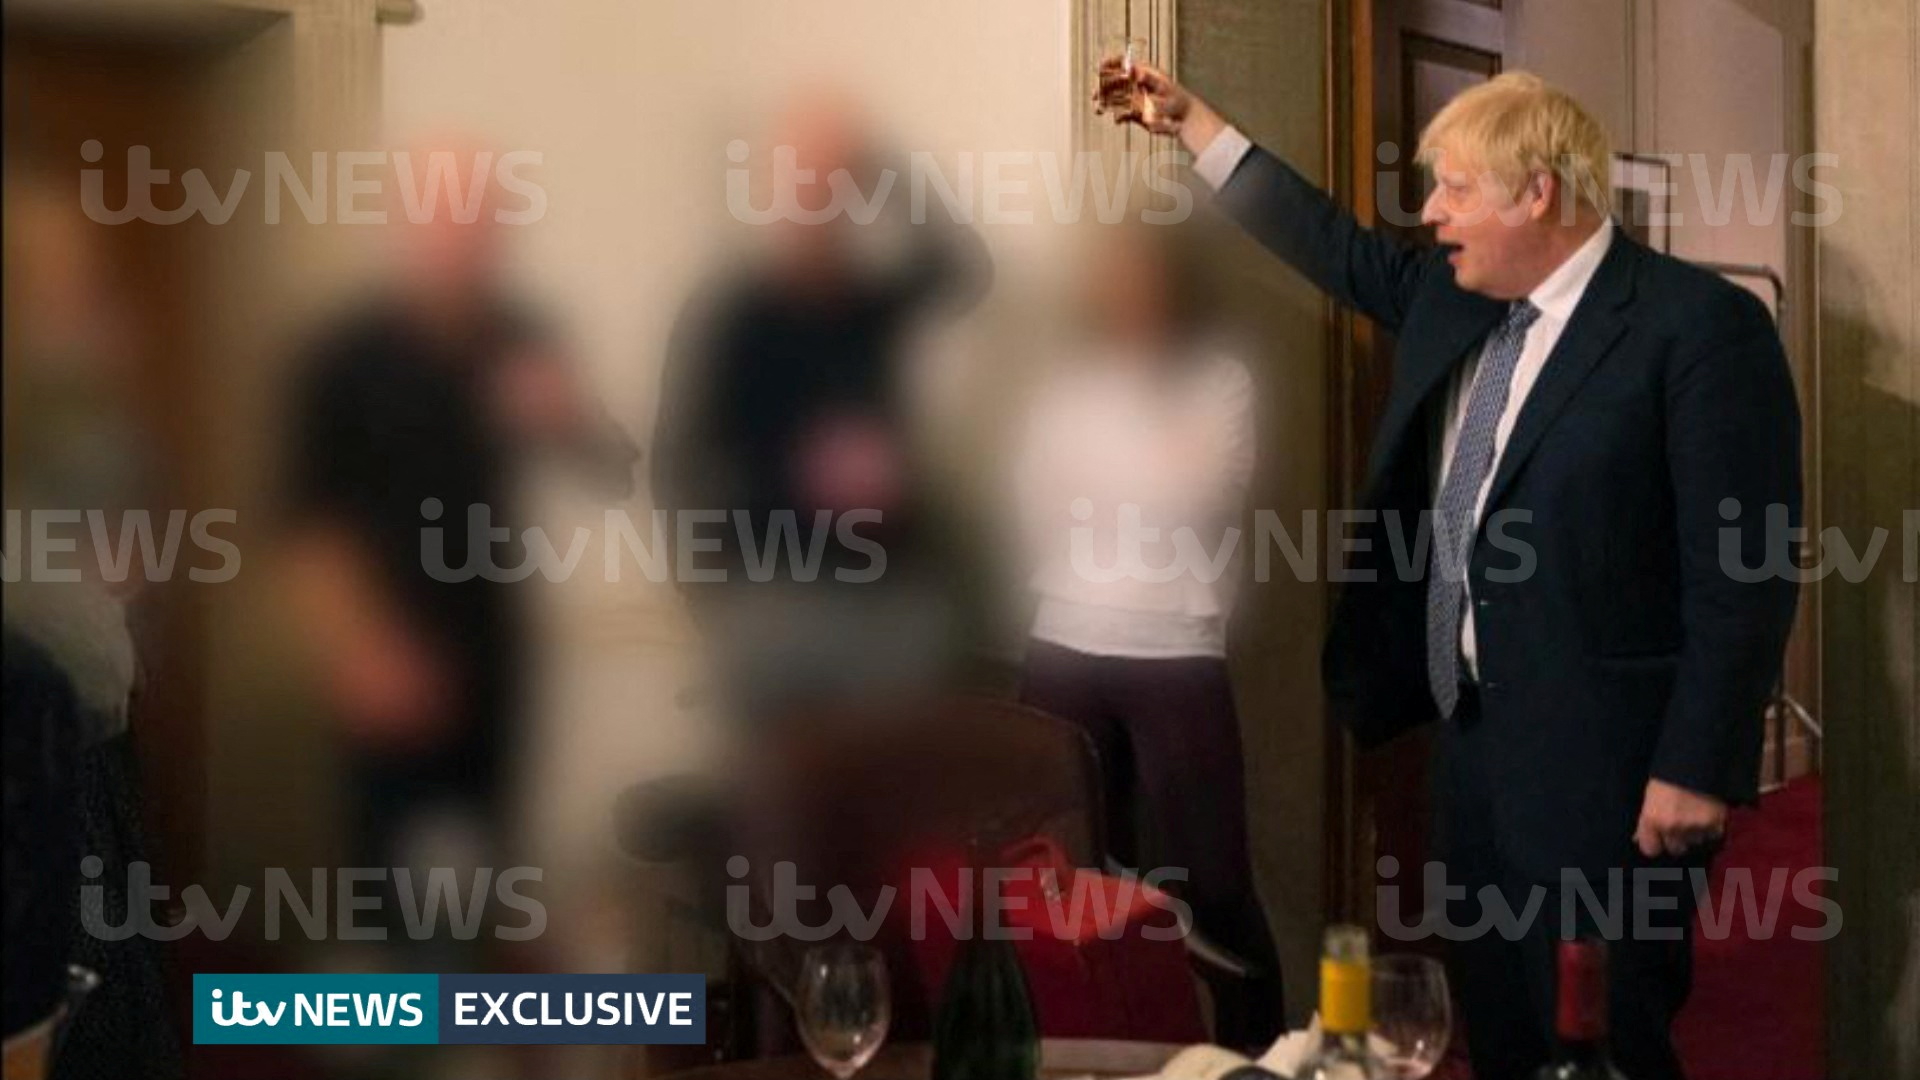 Foto des britischen Senders ITV vom Boris Johnson von einer Feier während des Lockdowns in der Corona-Pandemie | VIA REUTERS